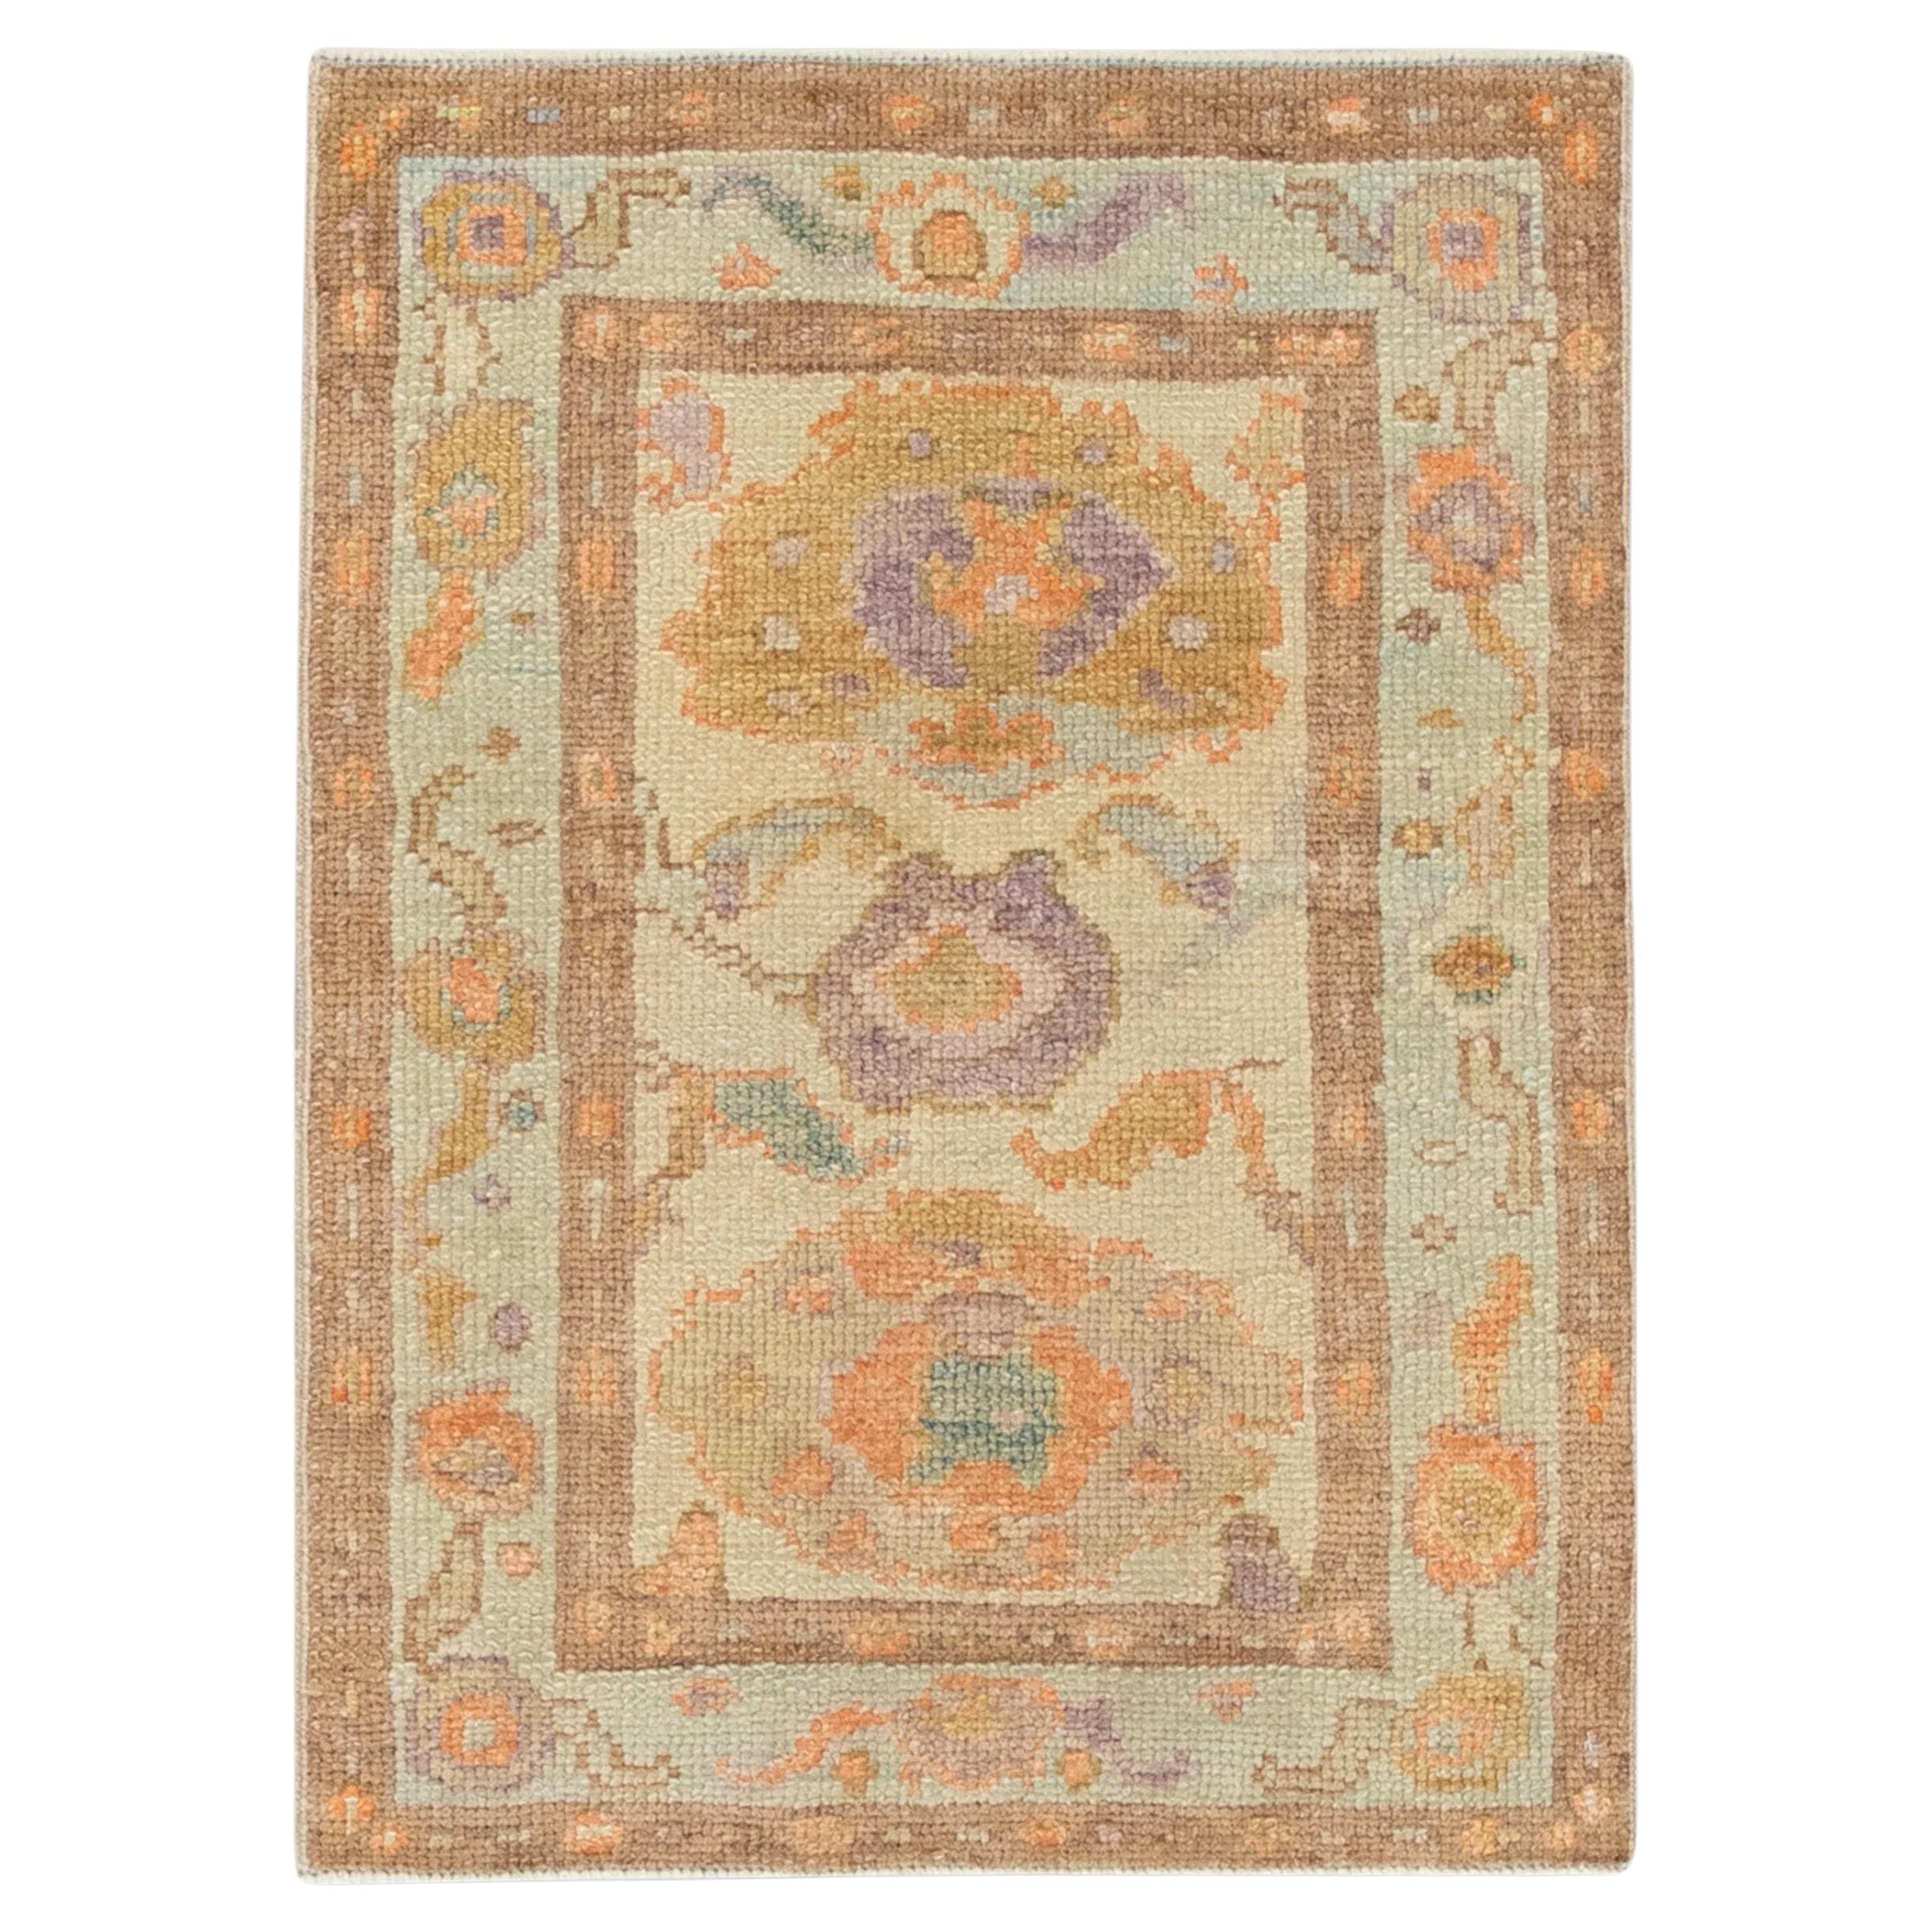 Türkischer Oushak-Teppich aus handgewebter Wolle mit mehrfarbigem Blumenmuster, 2' x 2'9"